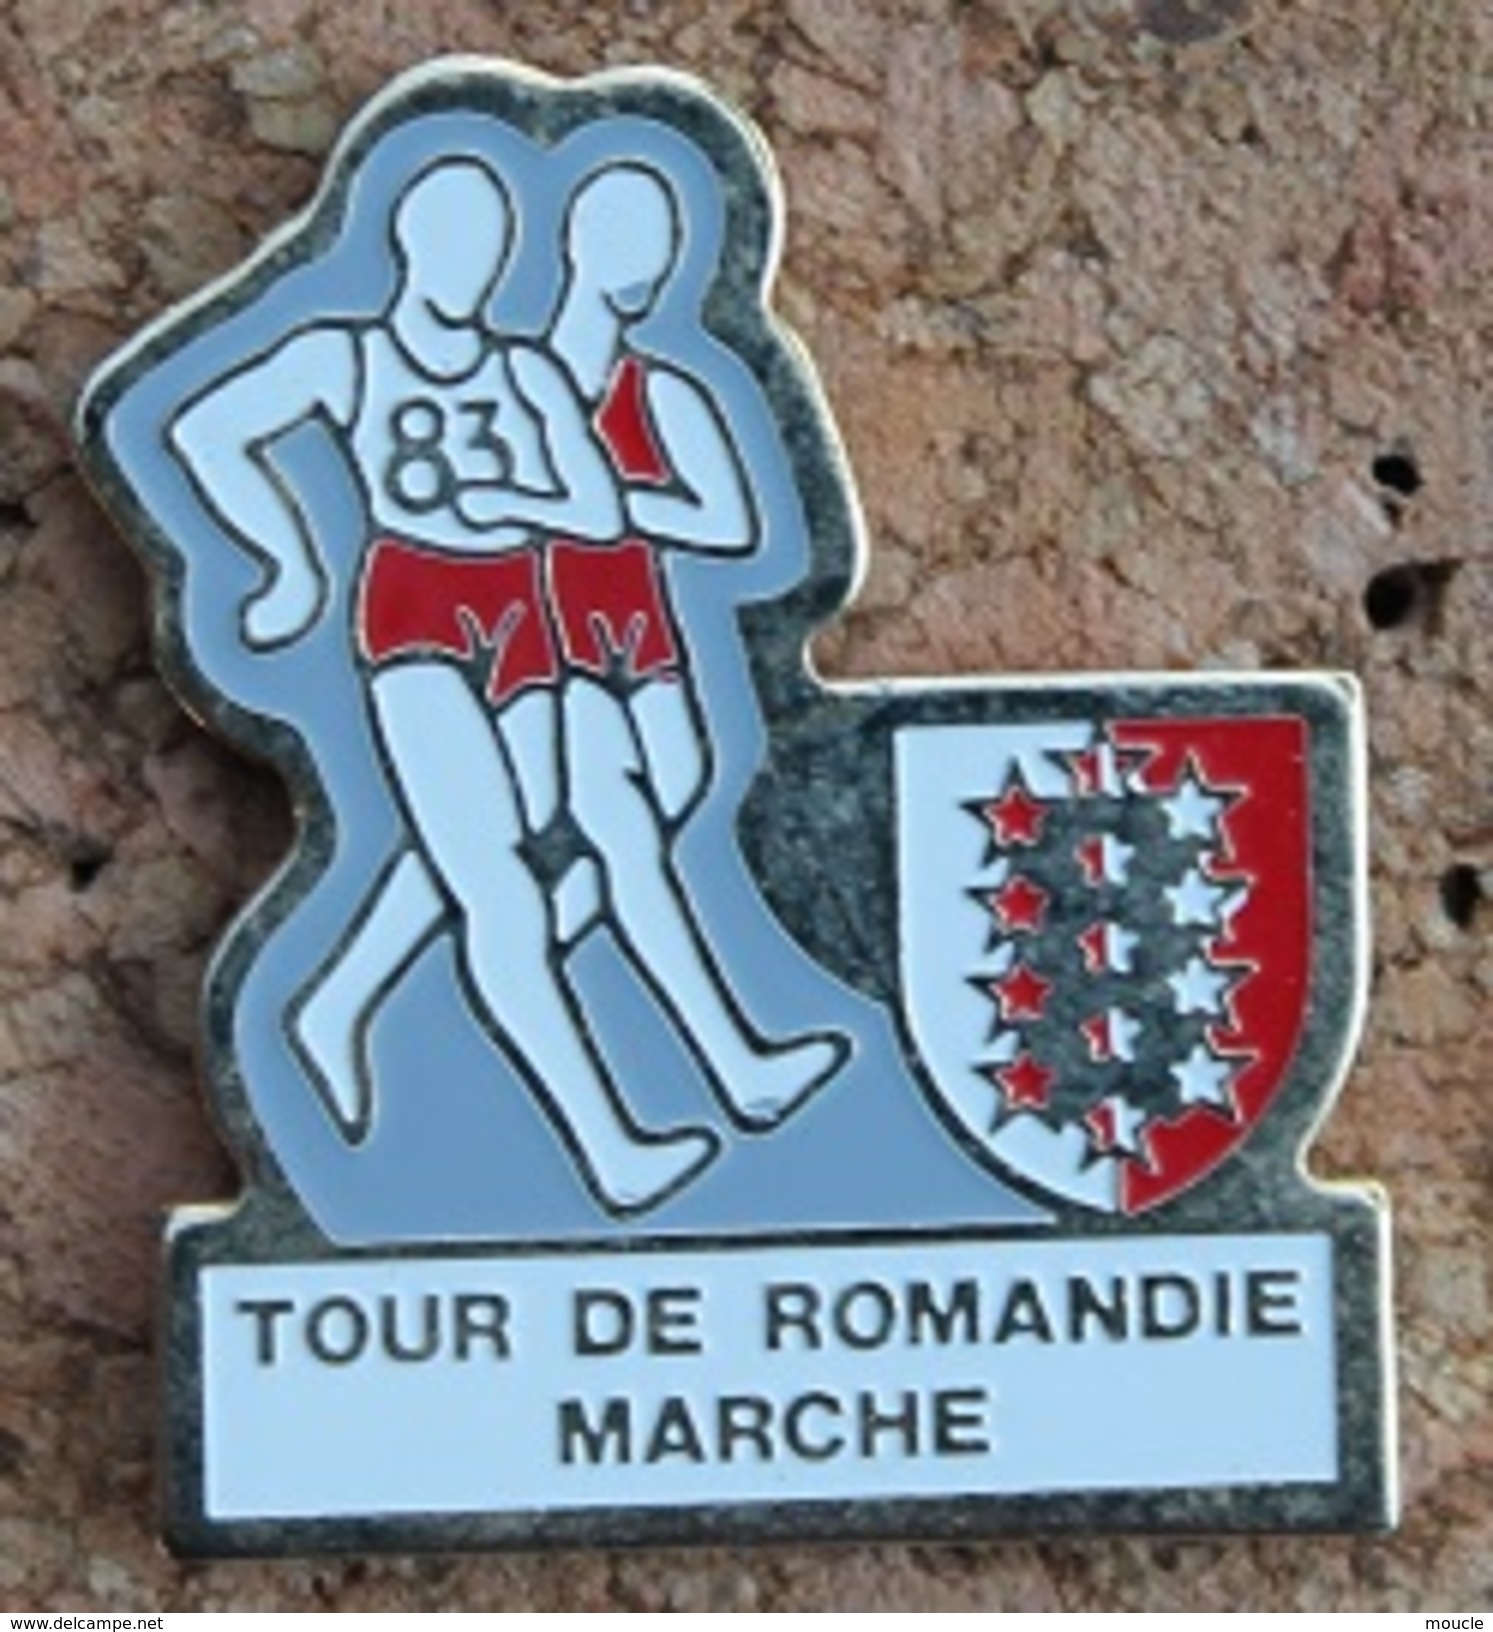 TOUR DE ROMANDIE A LA MARCHE - SUISSE - ETAPE DU CANTON DU VALAIS - MARCHEURS - SCHWEIZ - SVIZZERA - SUIZA  -     (13) - Leichtathletik